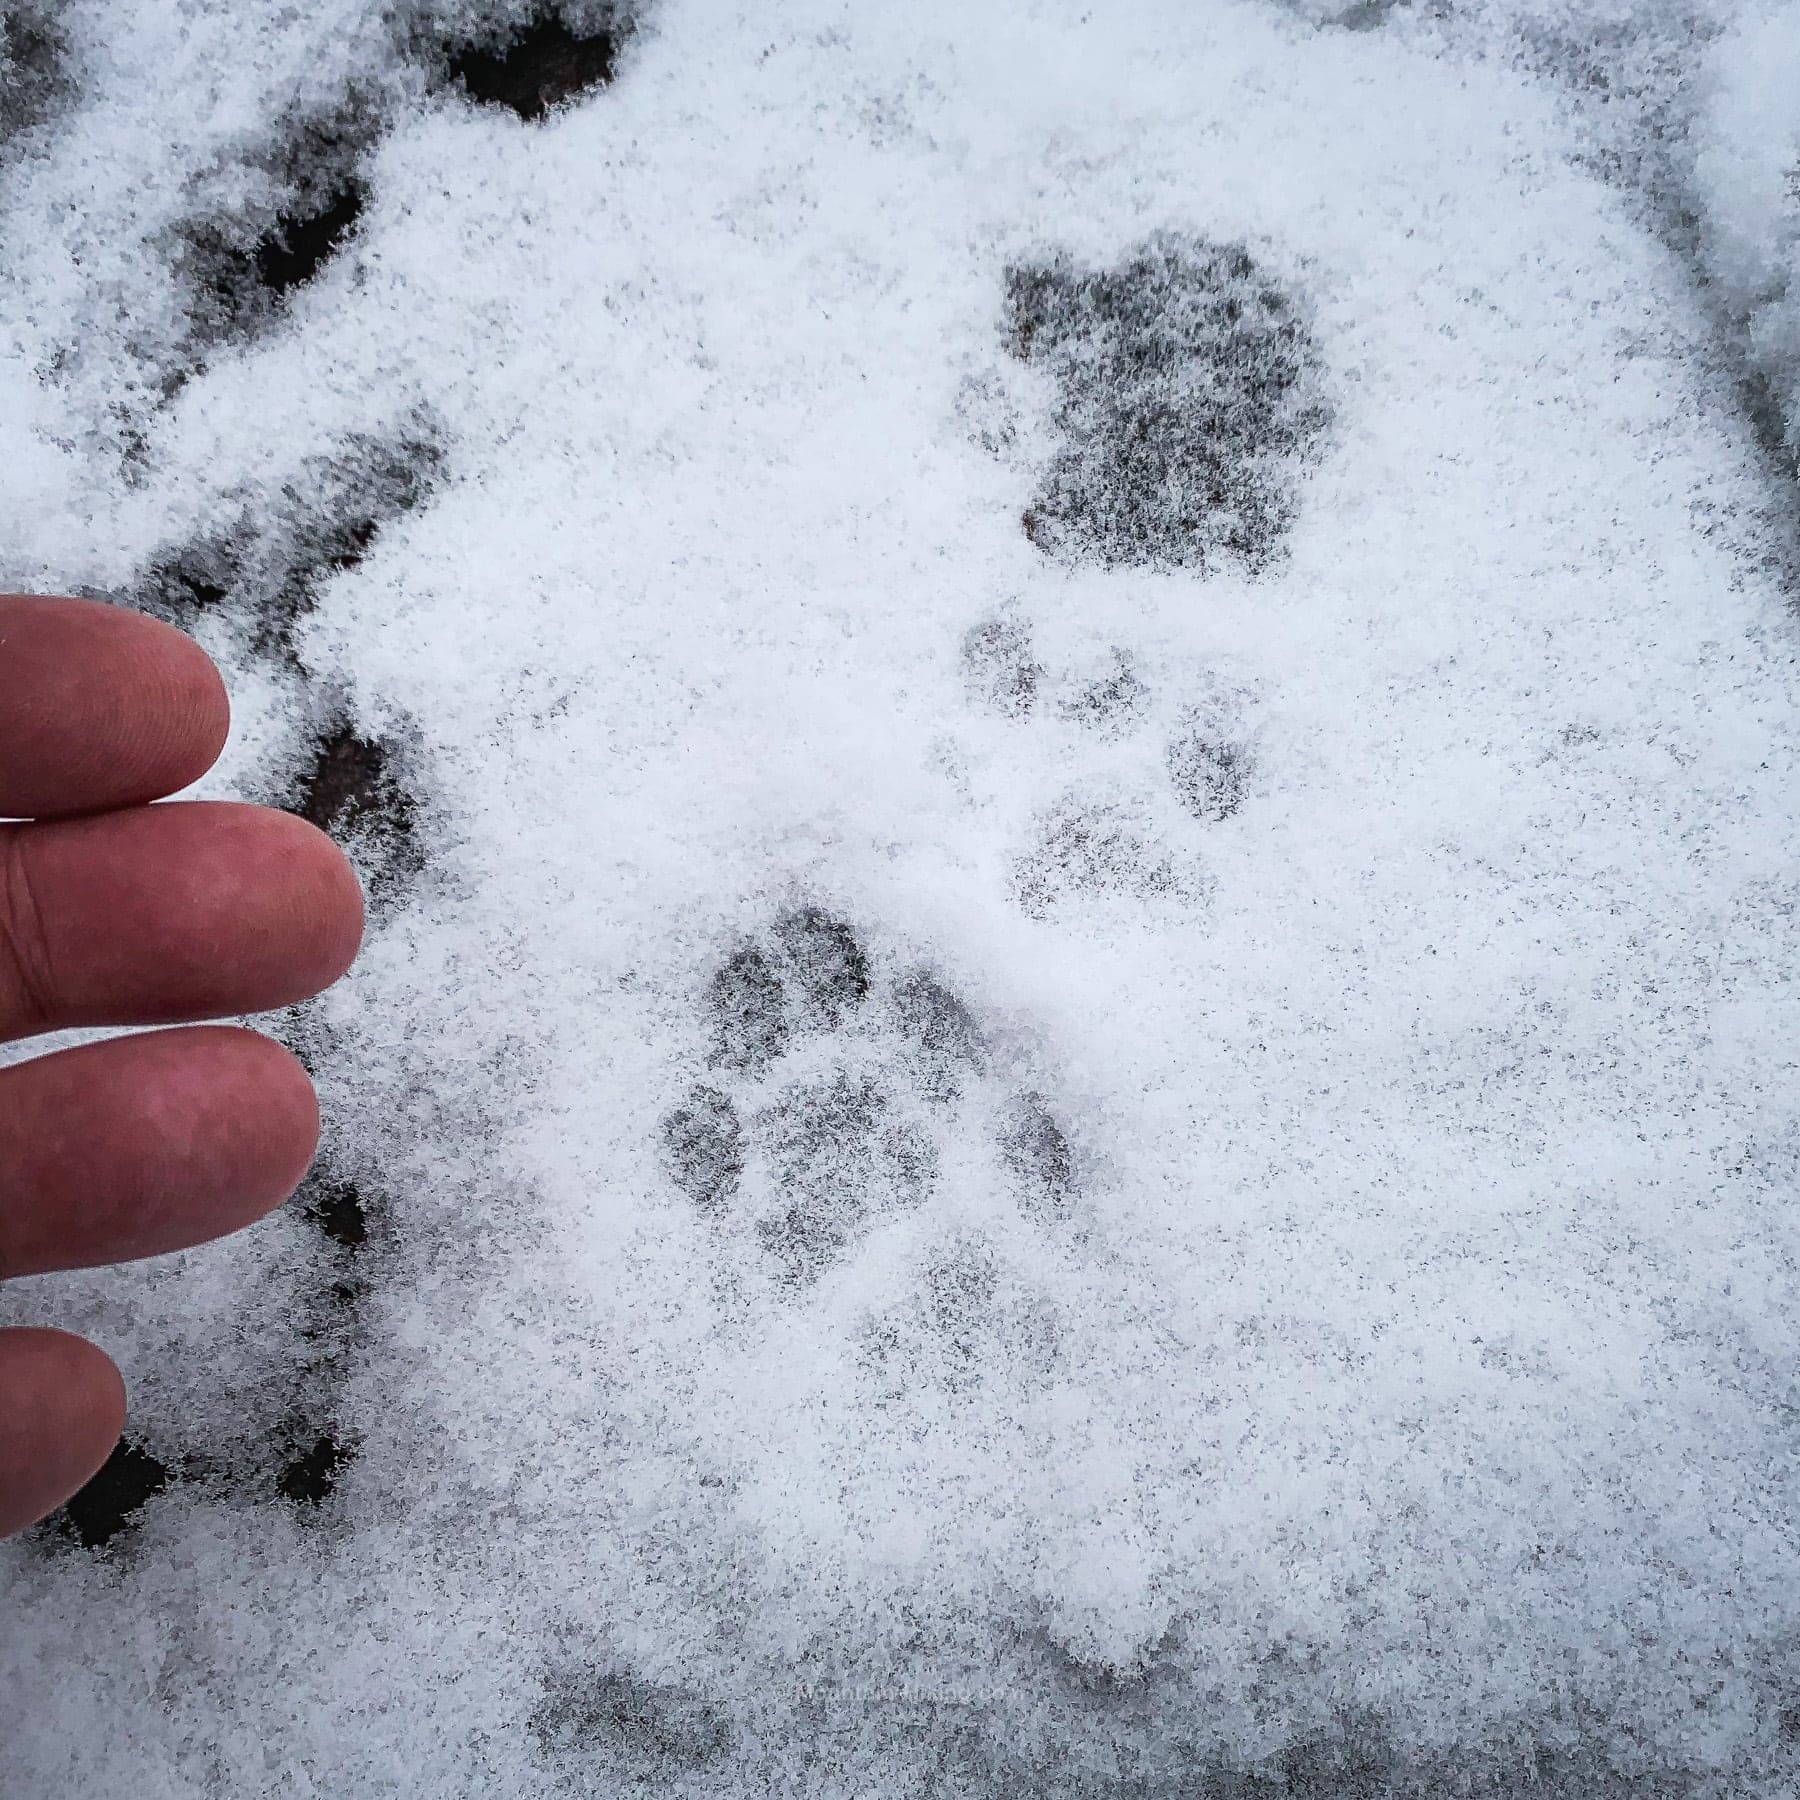 bobcat prints in snow